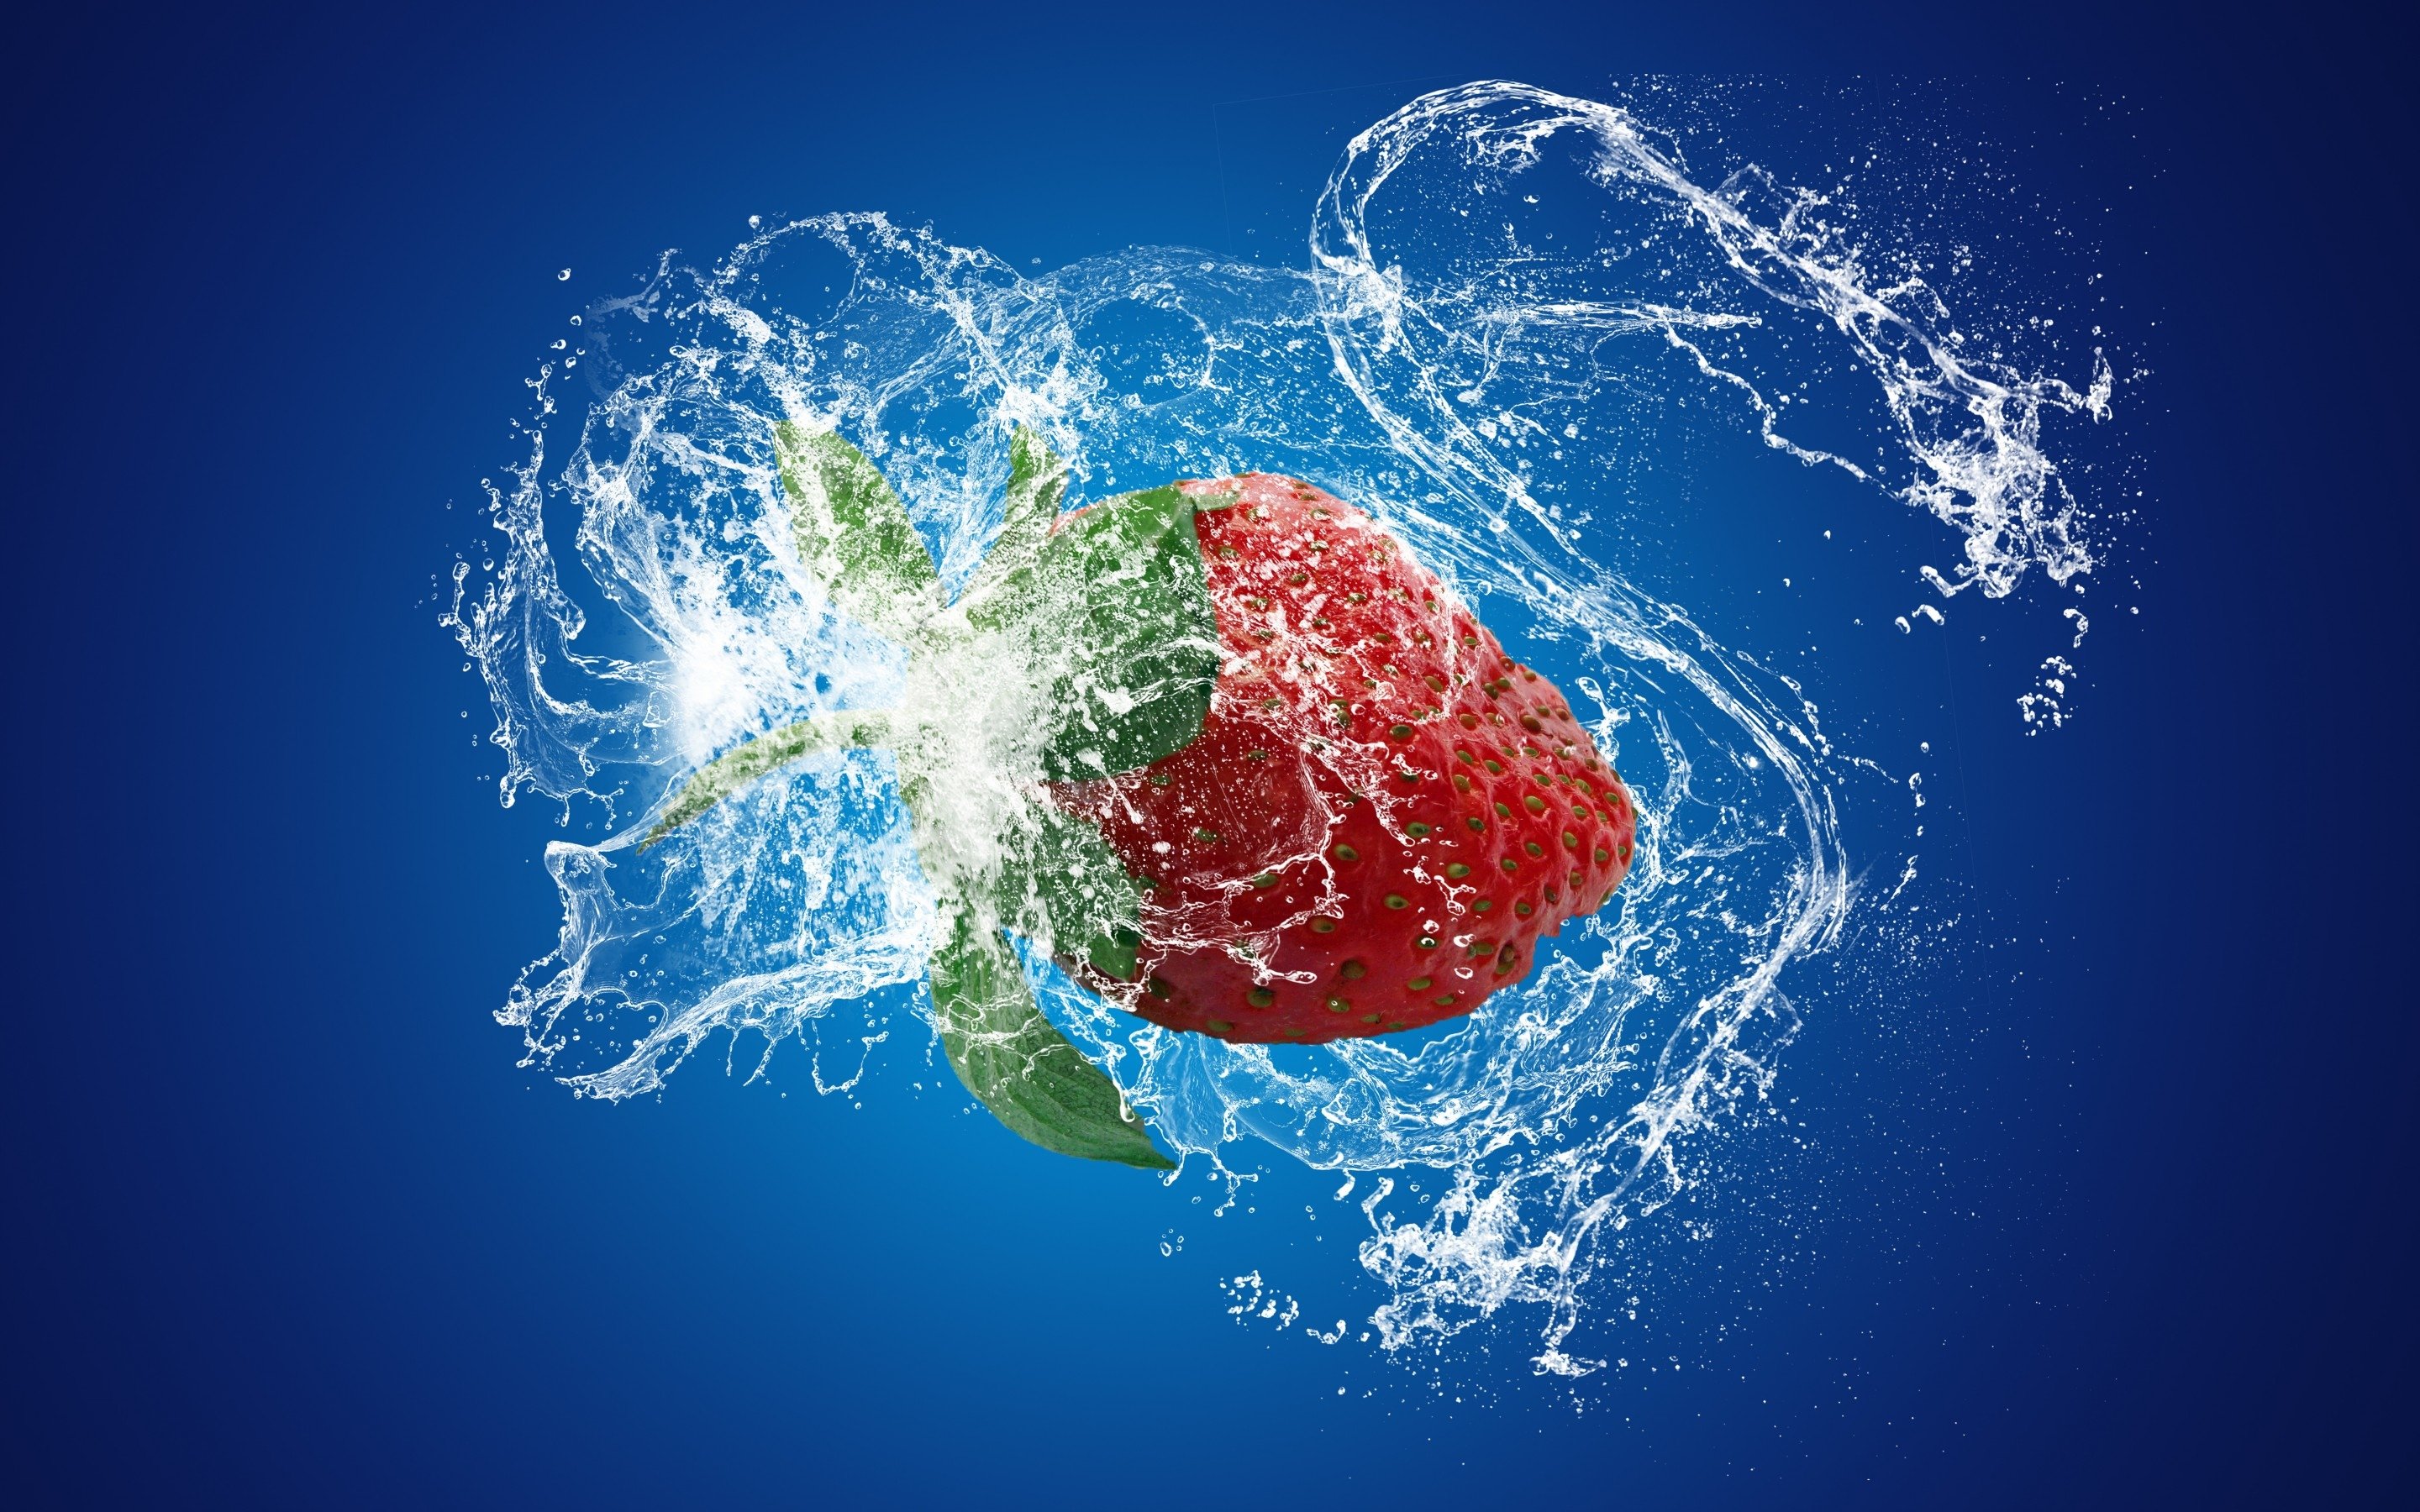 Сочные фрукты в воде